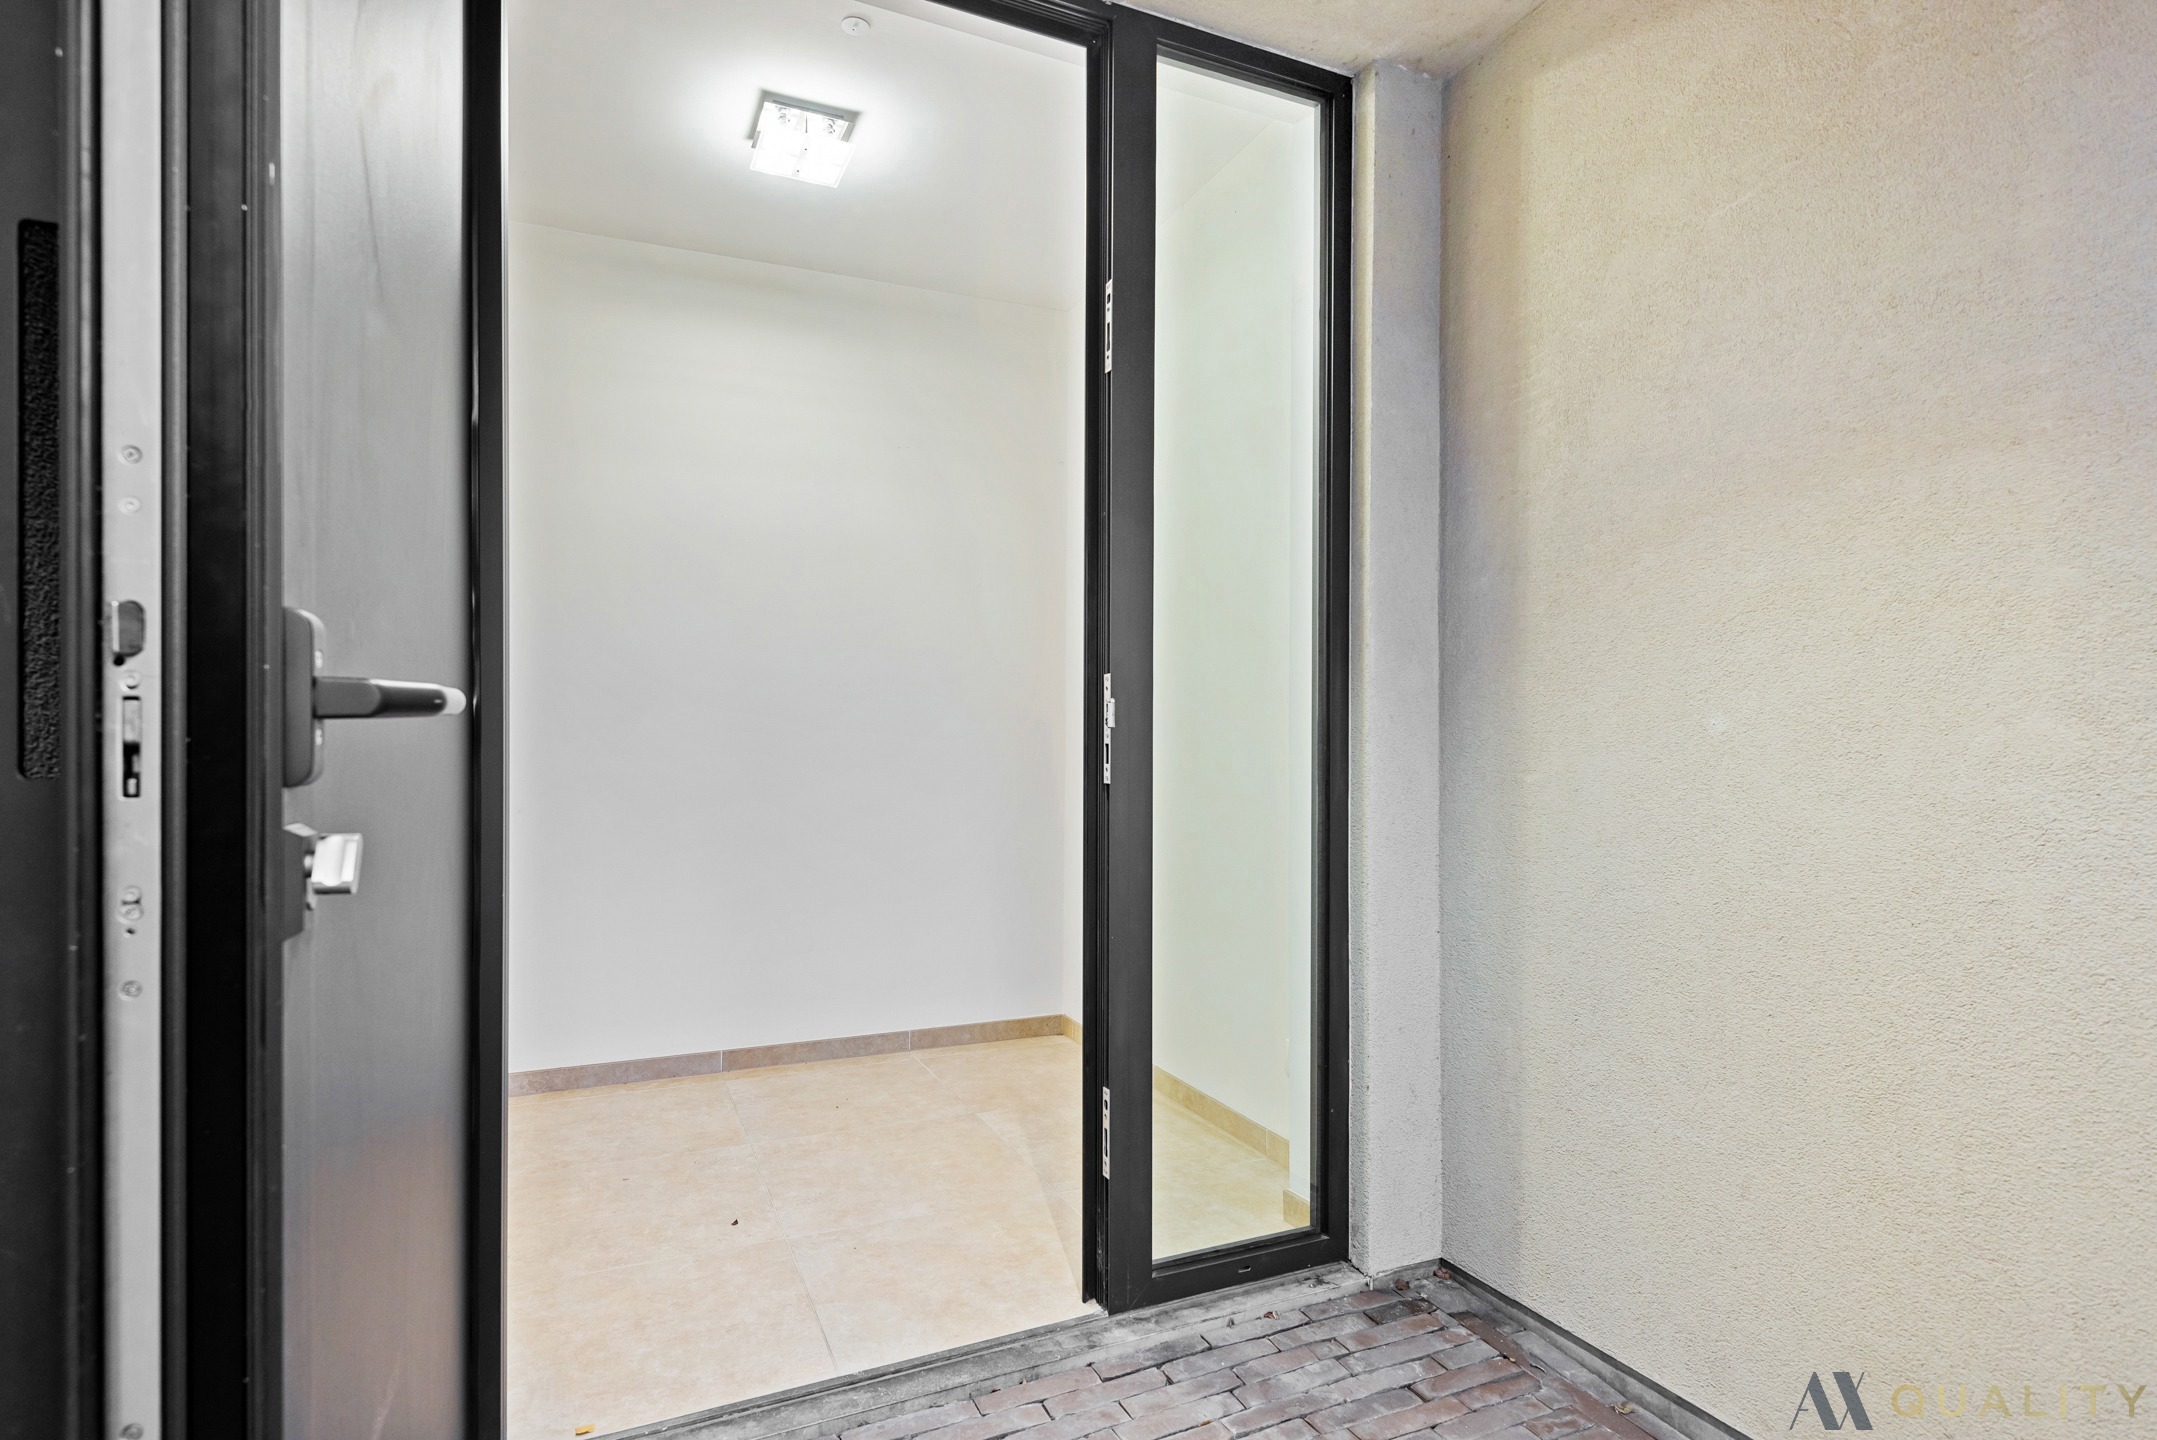 Gelijkvloers appartement in Bornem centrum met autostaanplaats foto 2